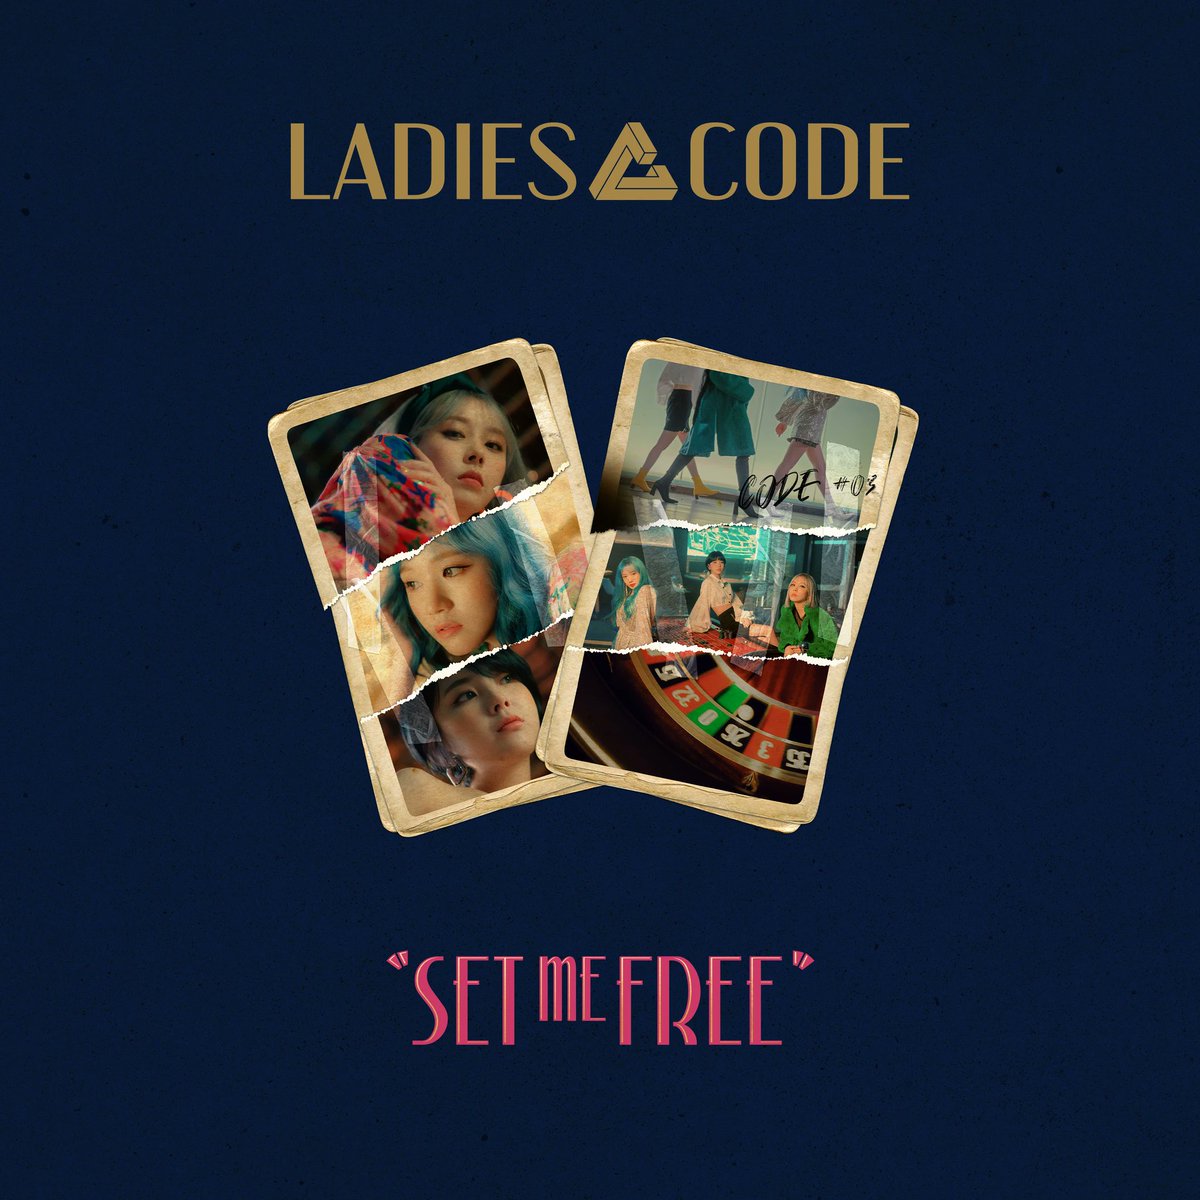 Ladies Code - Code #03 Set Me Free